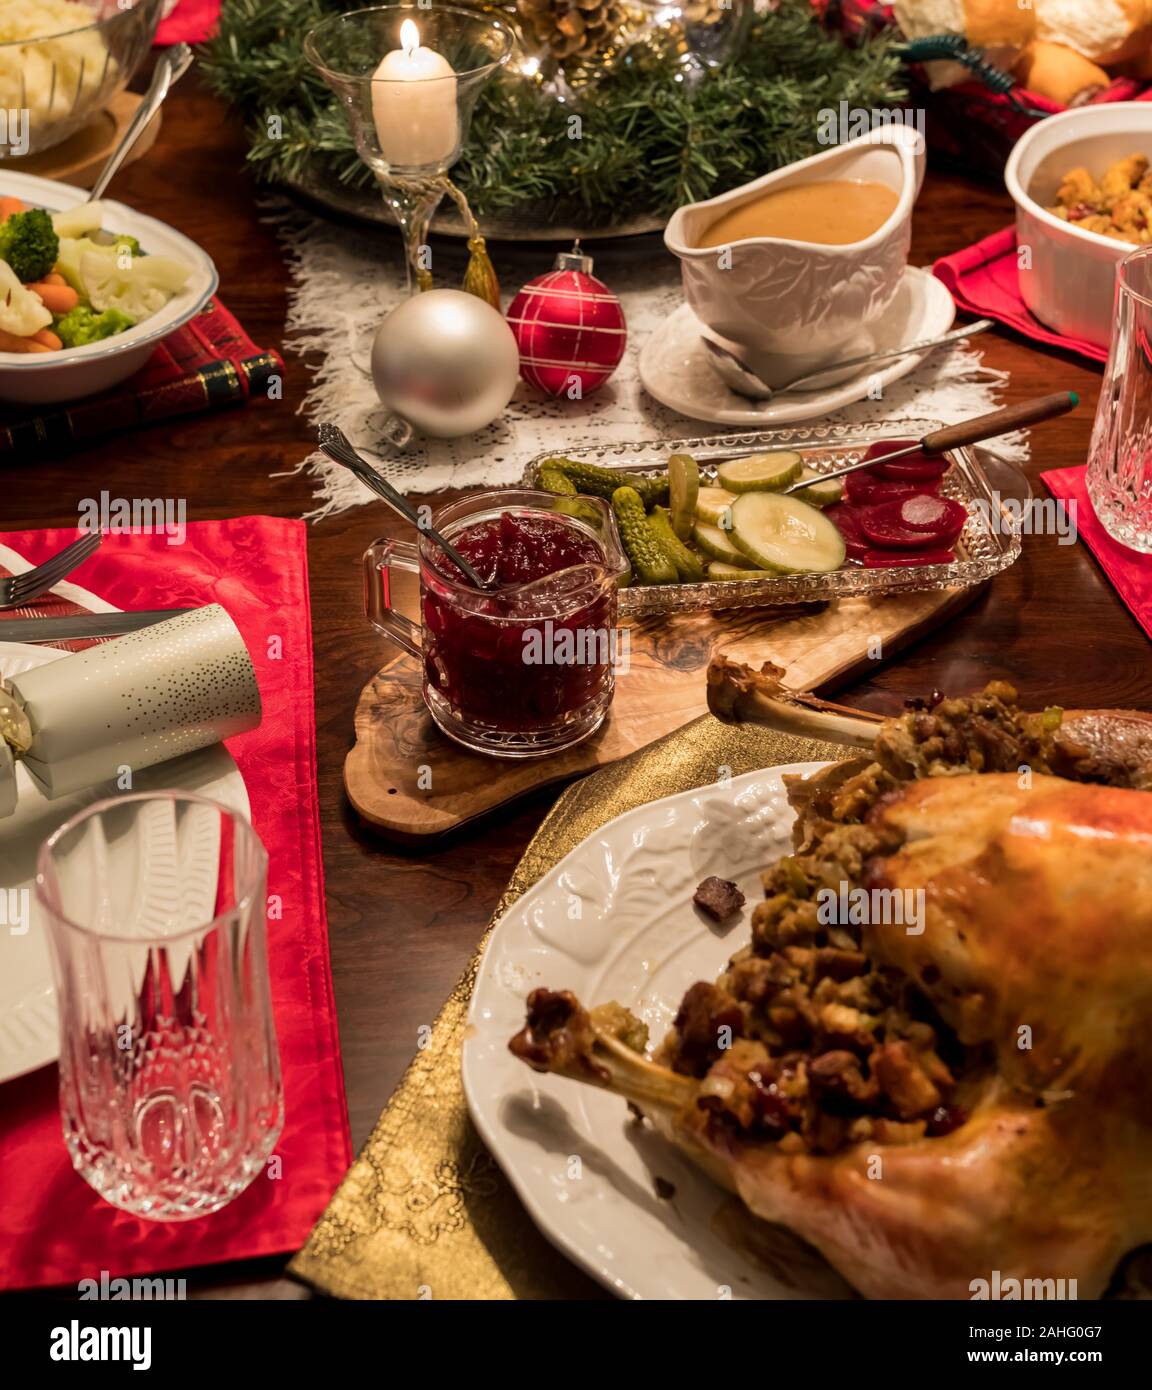 Eine Nahaufnahme von einem Esstisch mit einer kompletten Weihnachten Türkei Abendessen einschließlich cranberry Sauce, Soße bereit für Essen gekleidet. Stockfoto